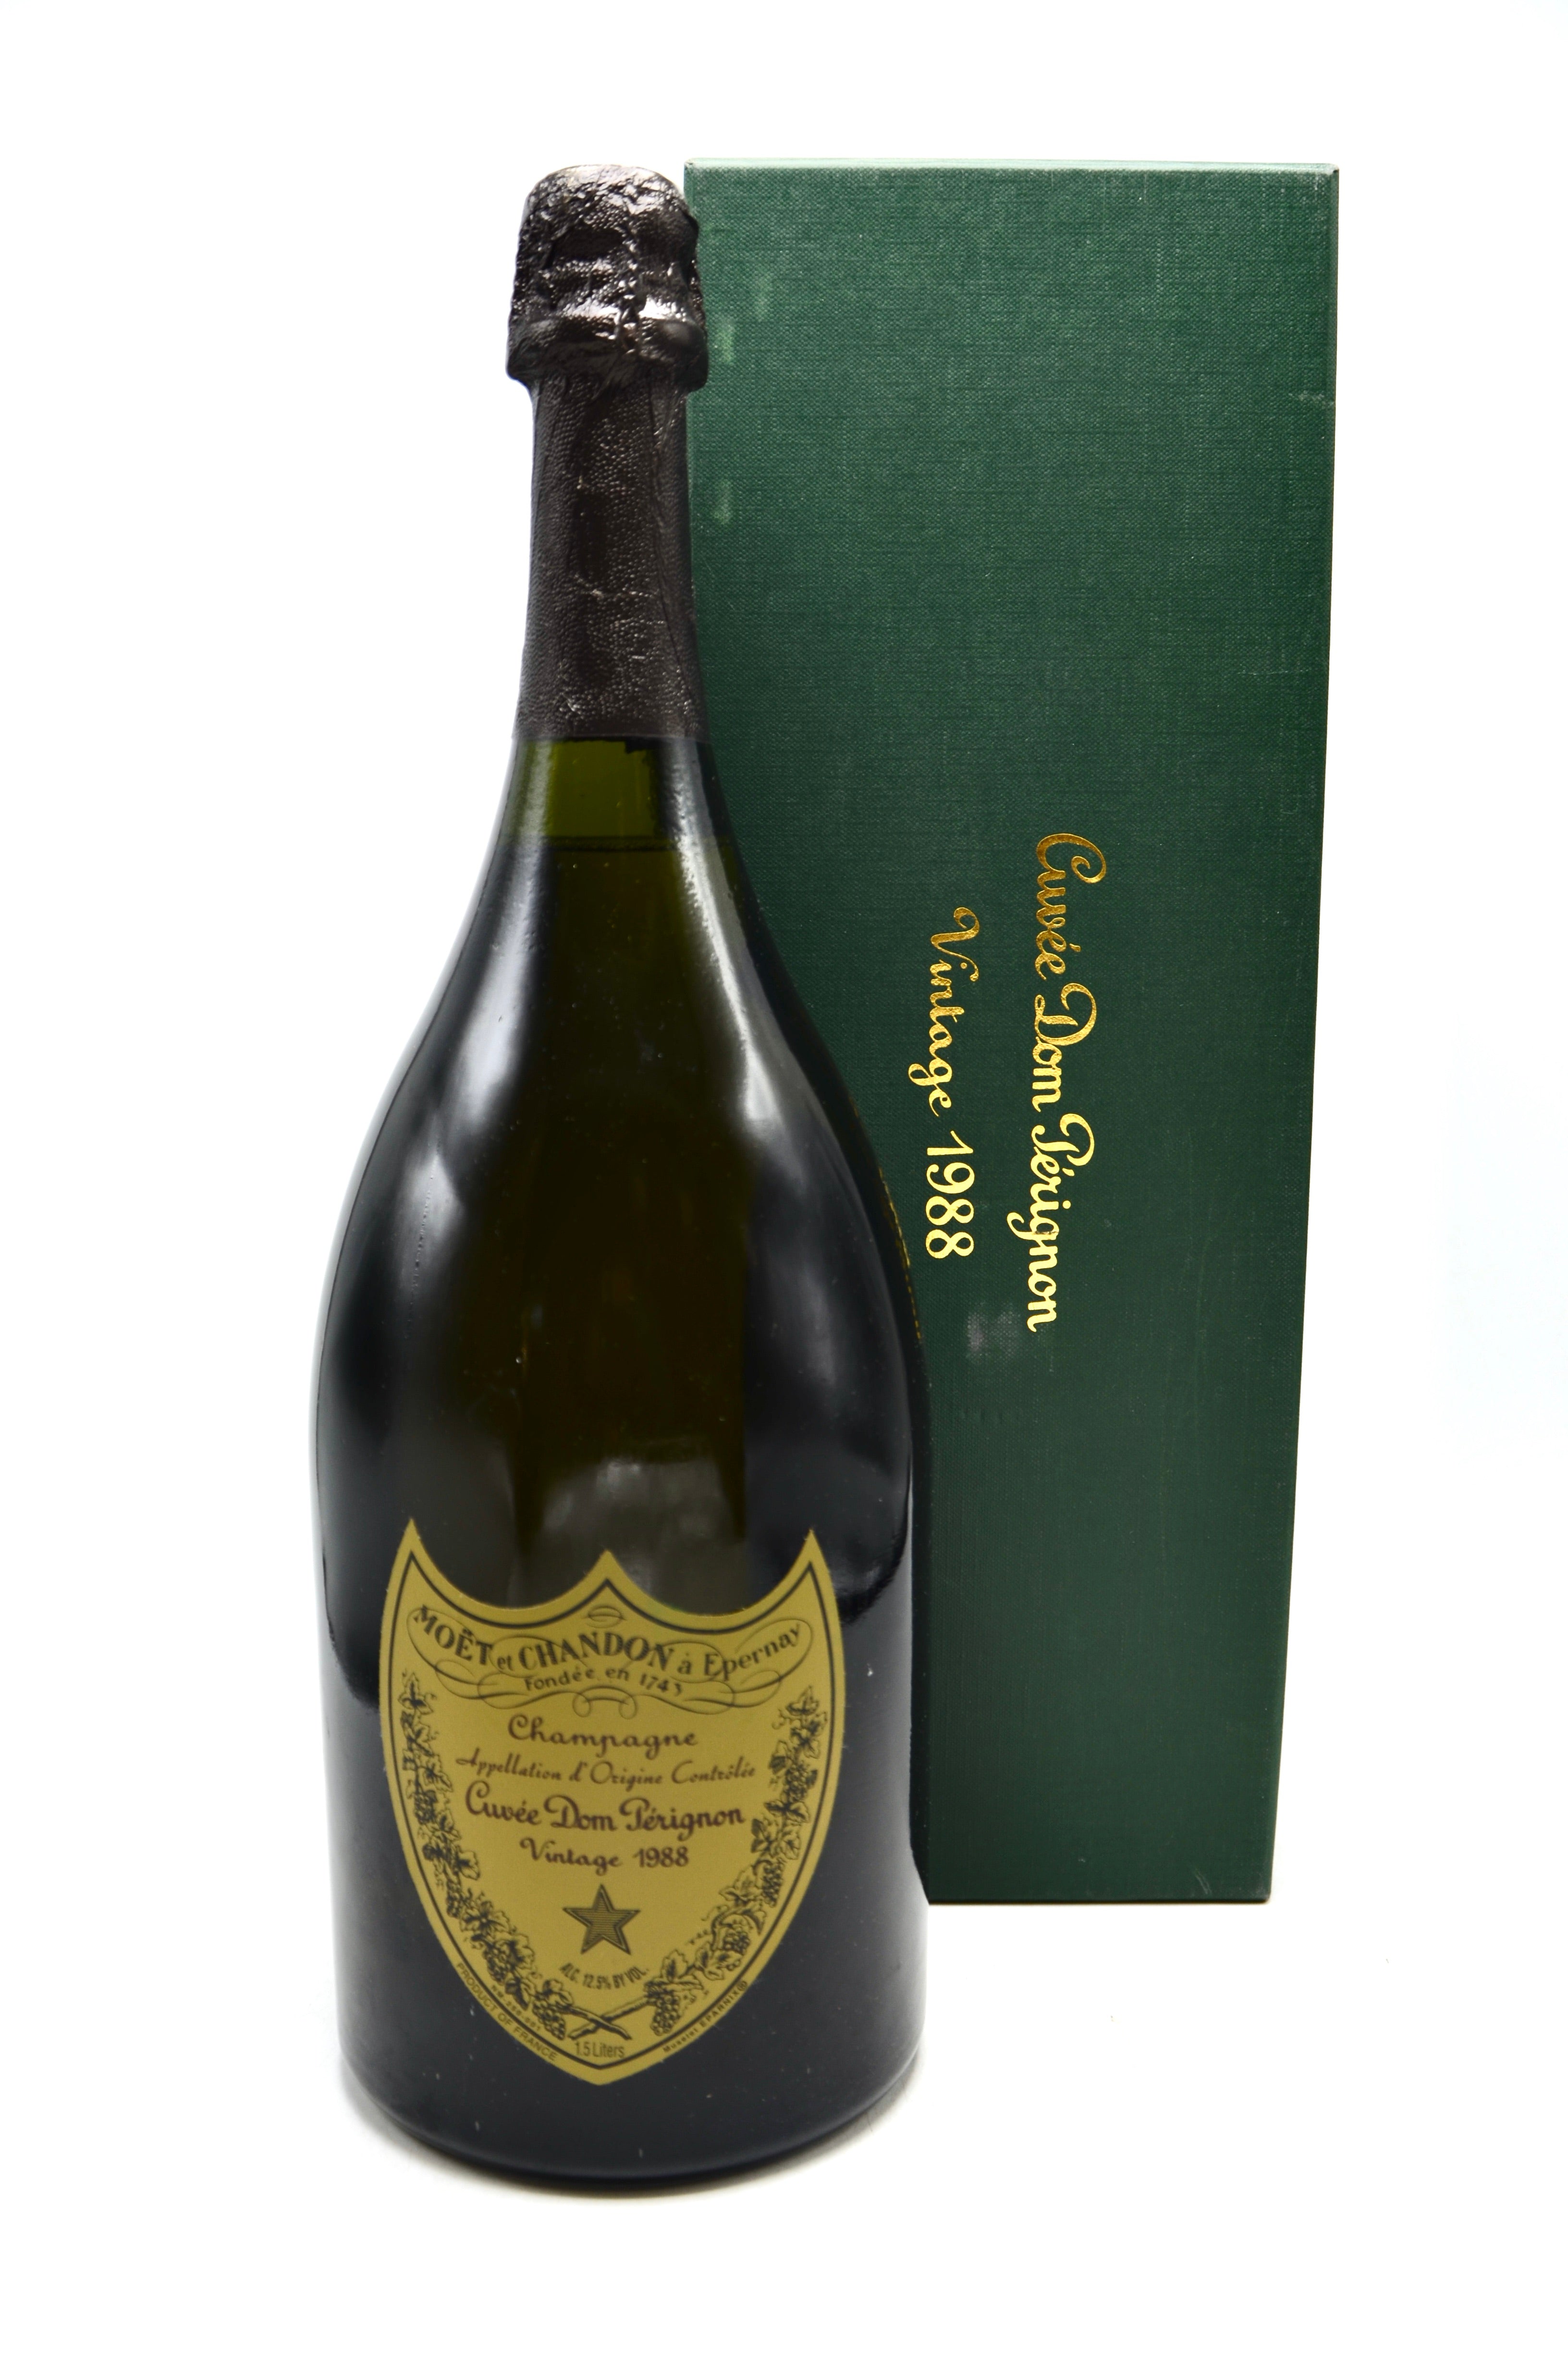 Buy Dom Perignon Champagne